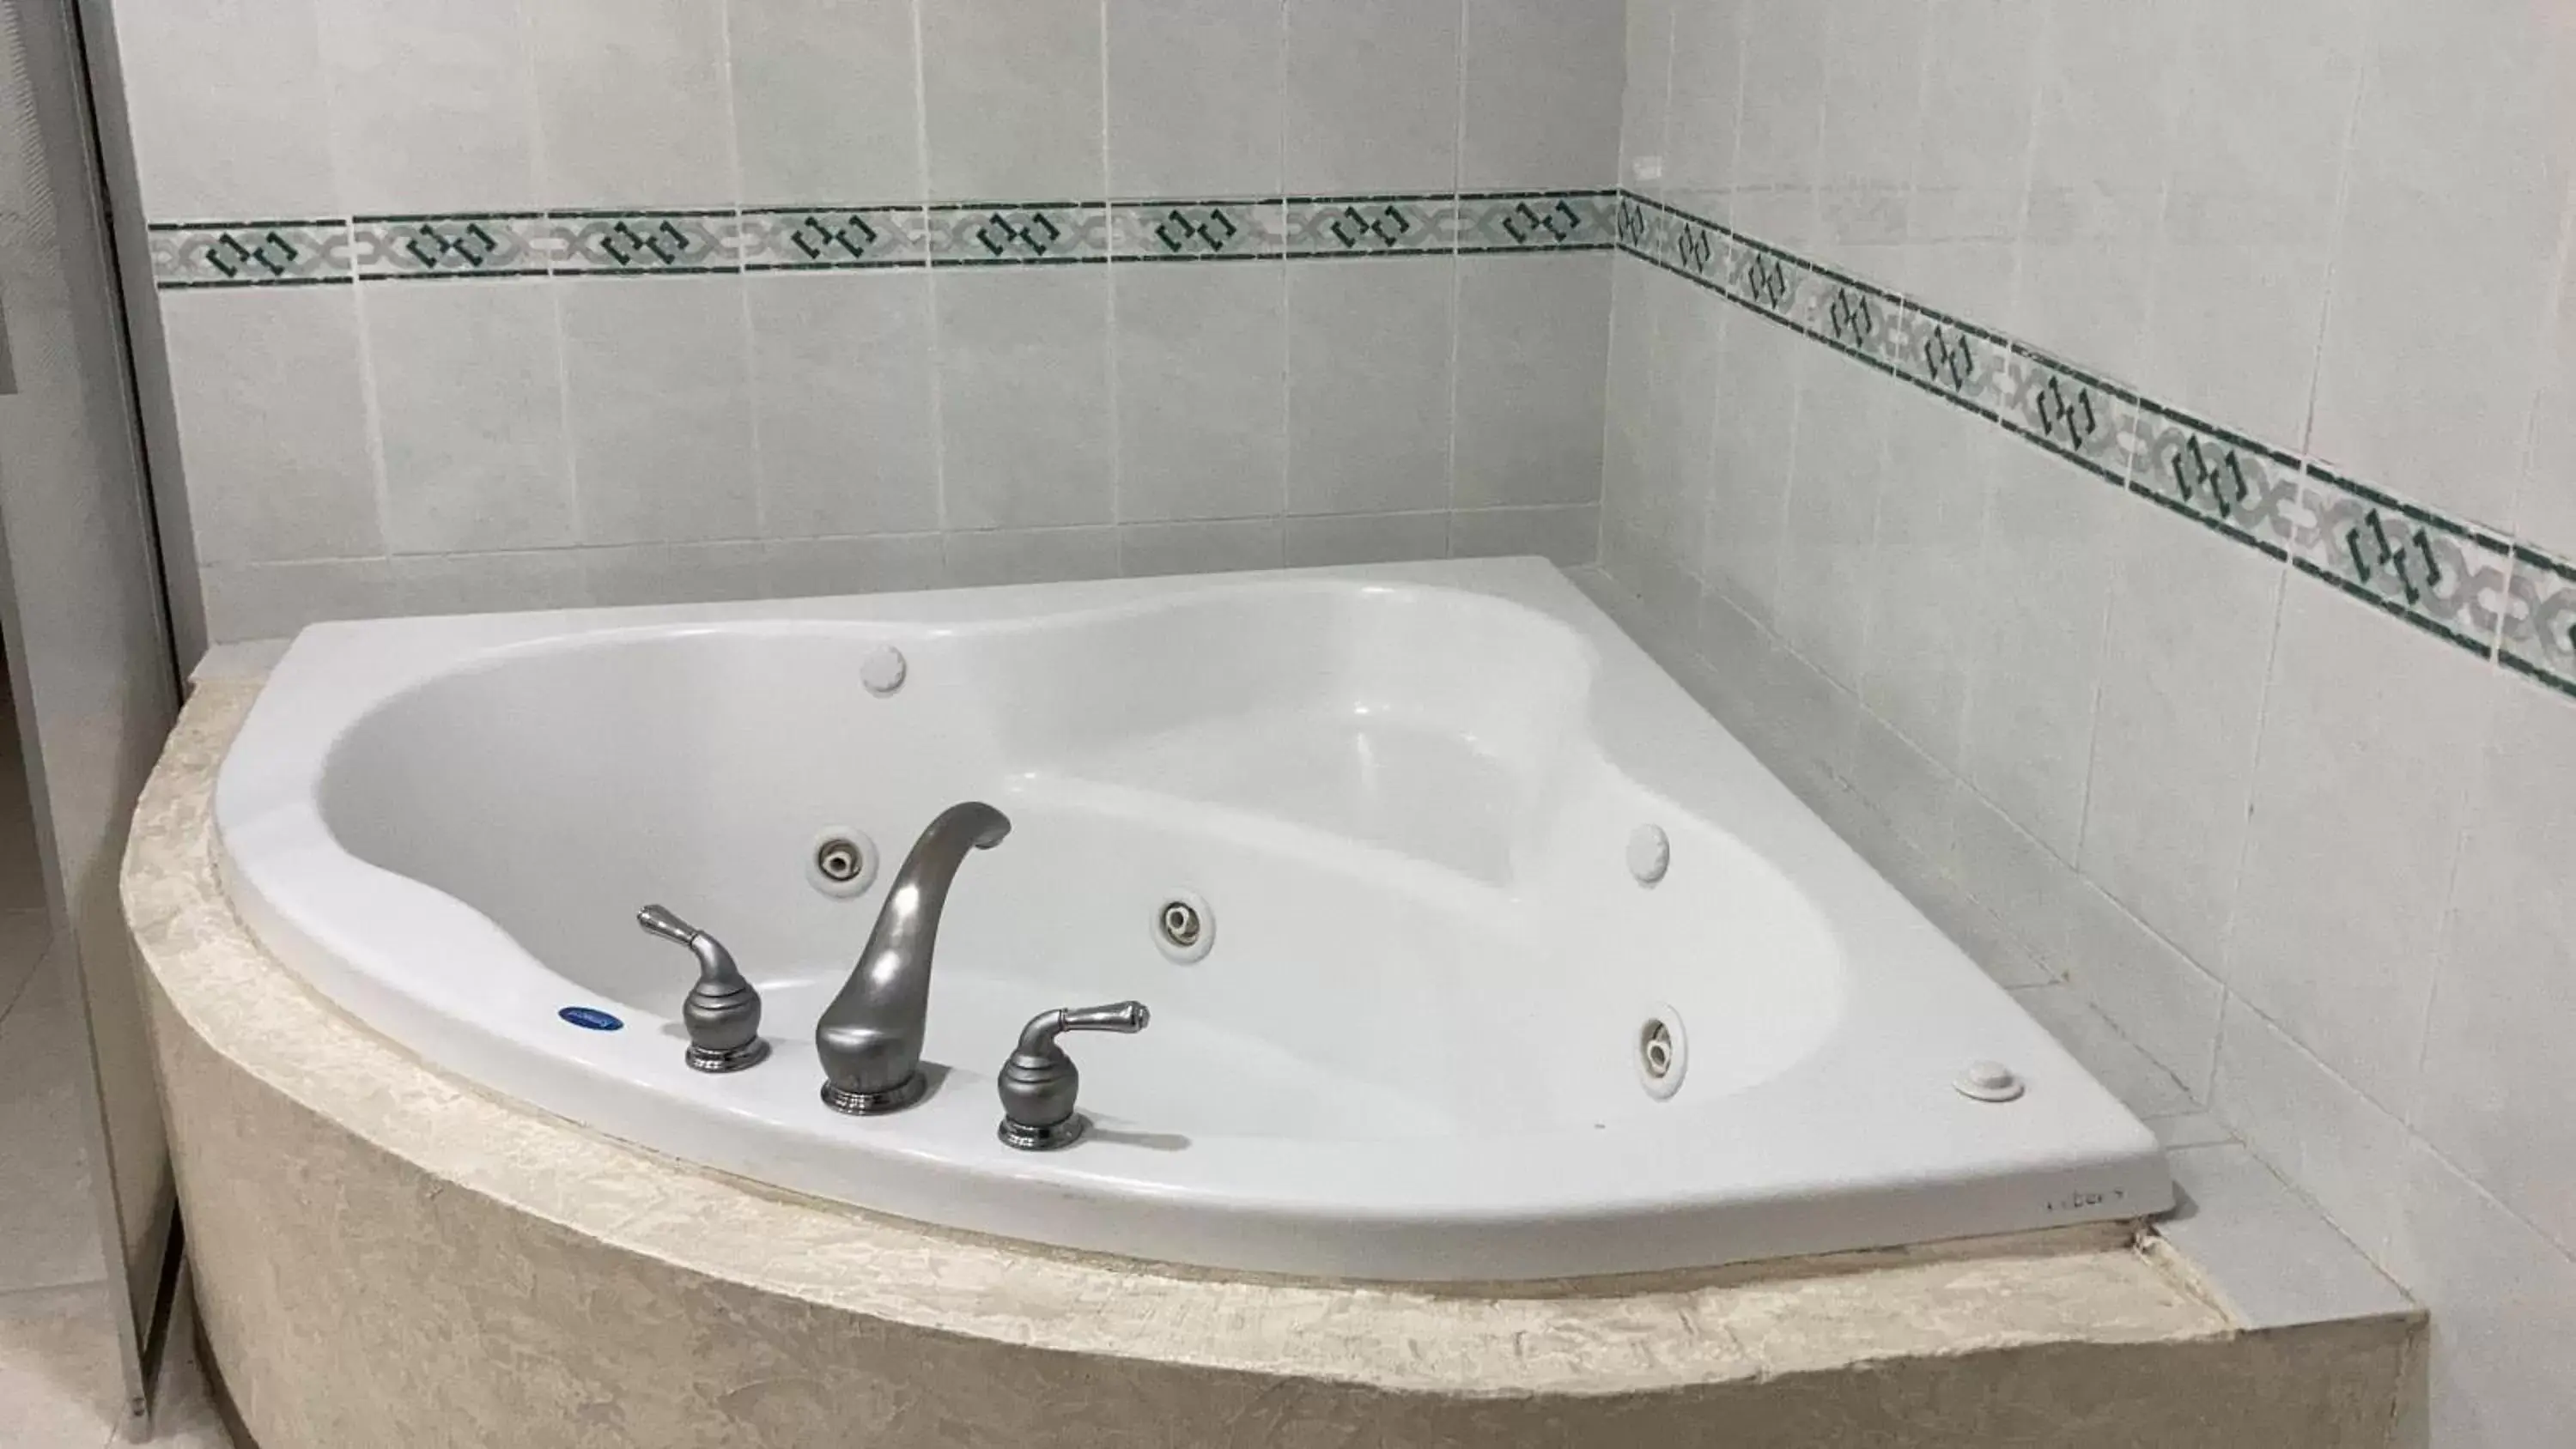 Hot Tub, Bathroom in Hotel Enterprise Inn Poliforum